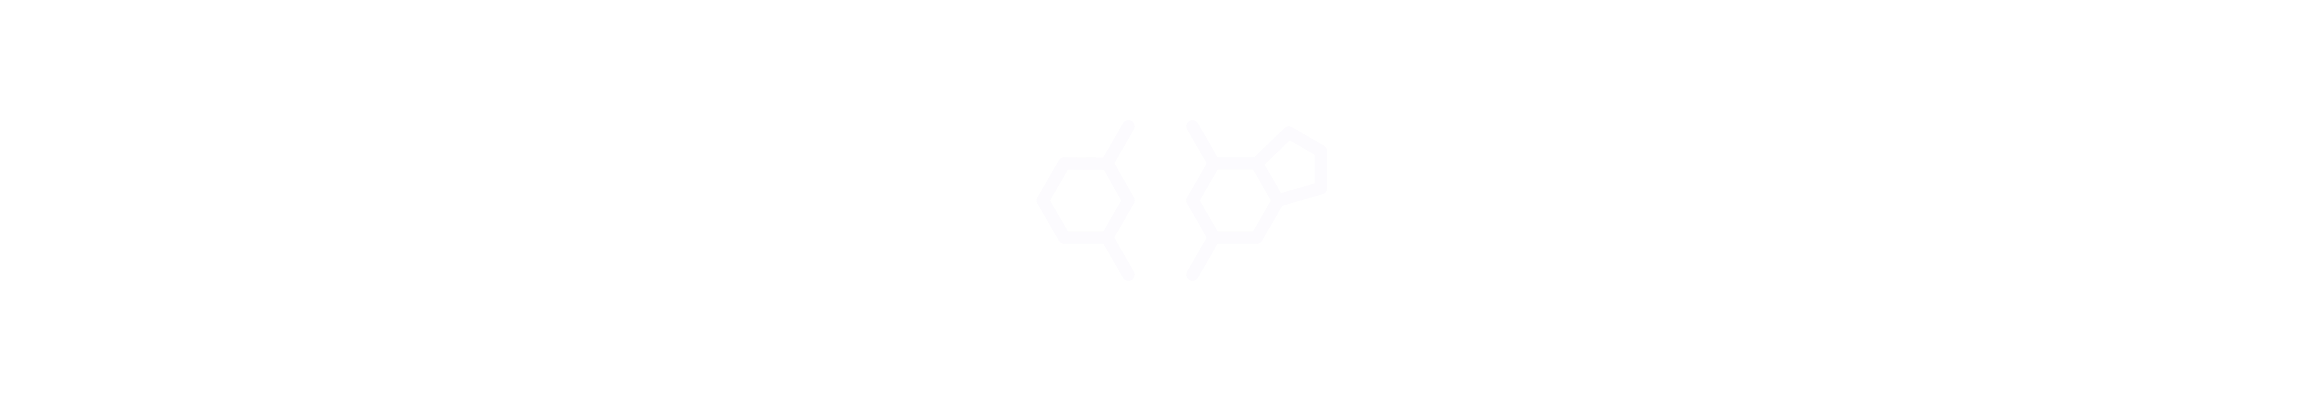 critical genomics titel und Logo